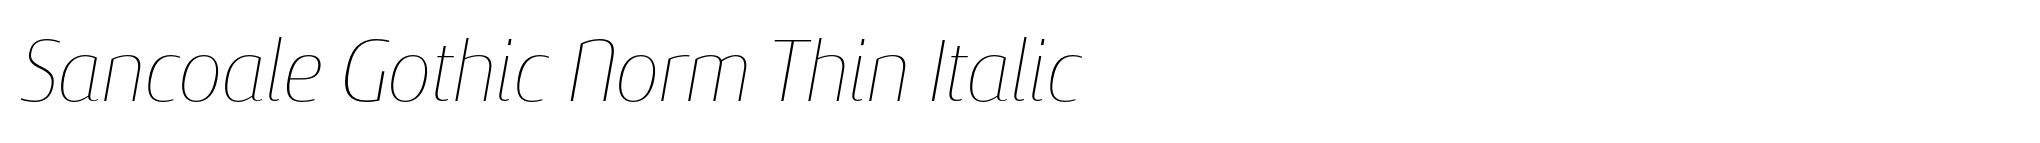 Sancoale Gothic Norm Thin Italic image